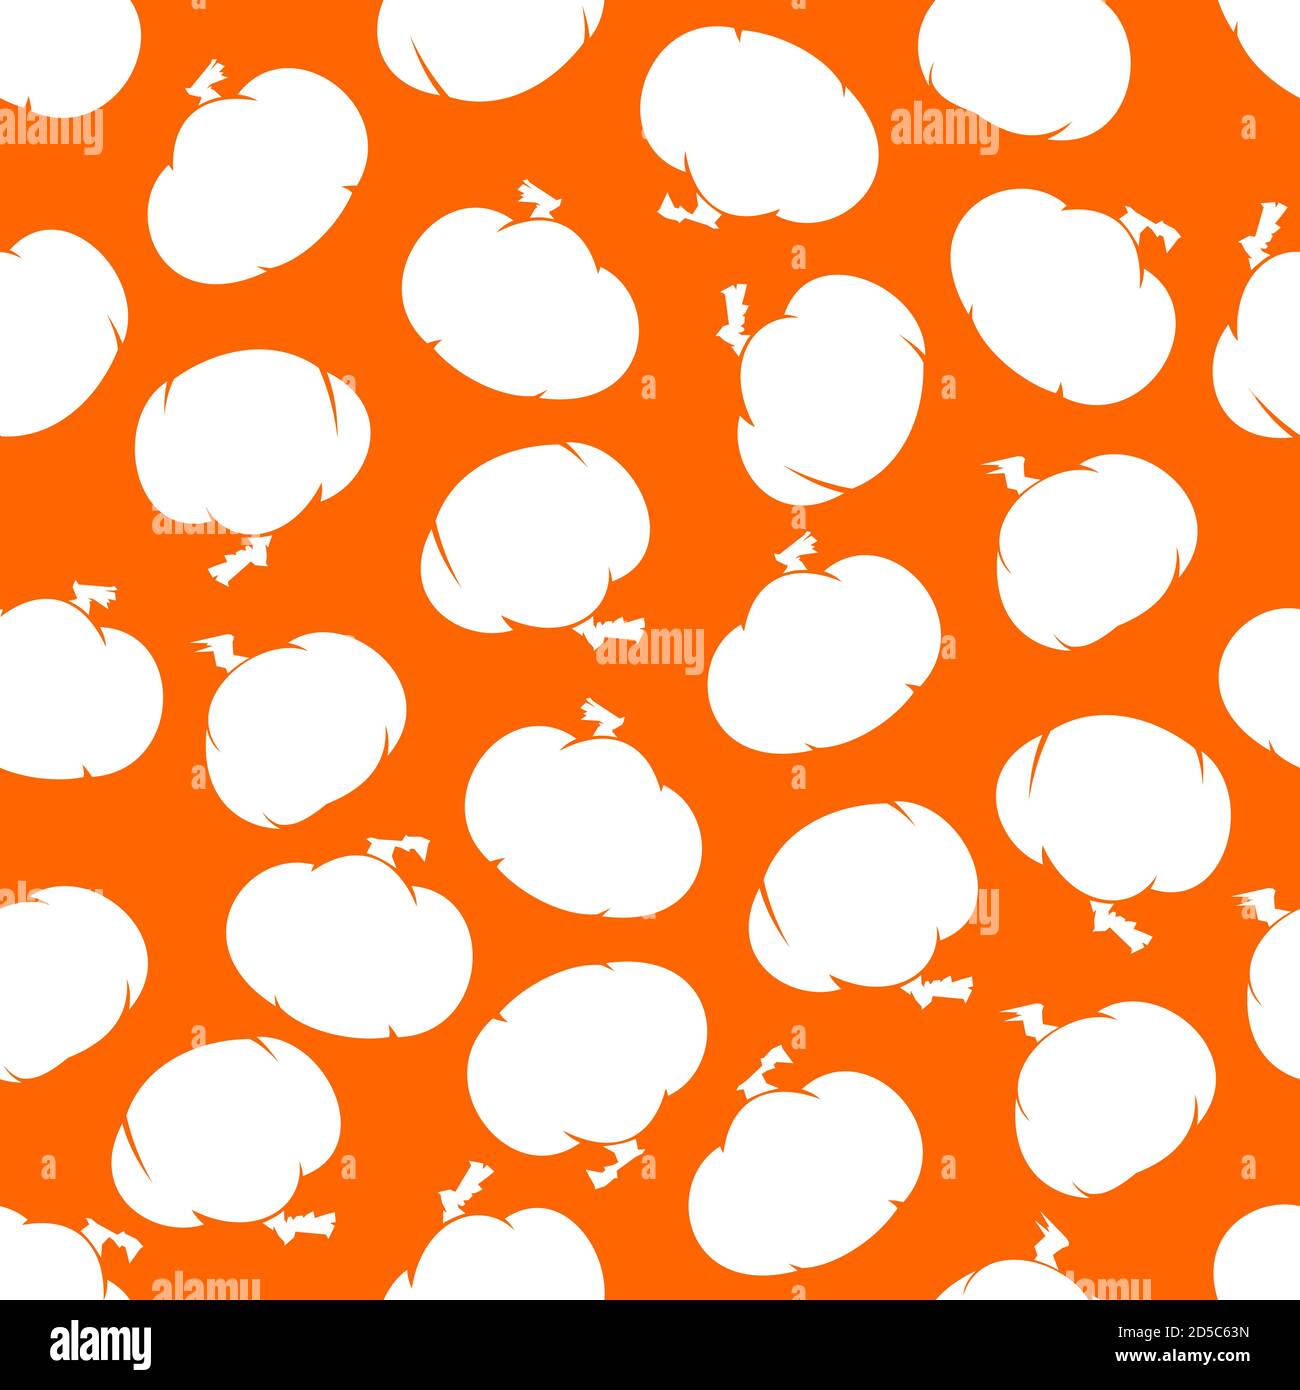 Weißer Kürbis Silhouette Vektor nahtlose Muster auf orangenen Hintergrund für Tapete, Verpackung, Verpackung und Hintergrund. Stock Vektor